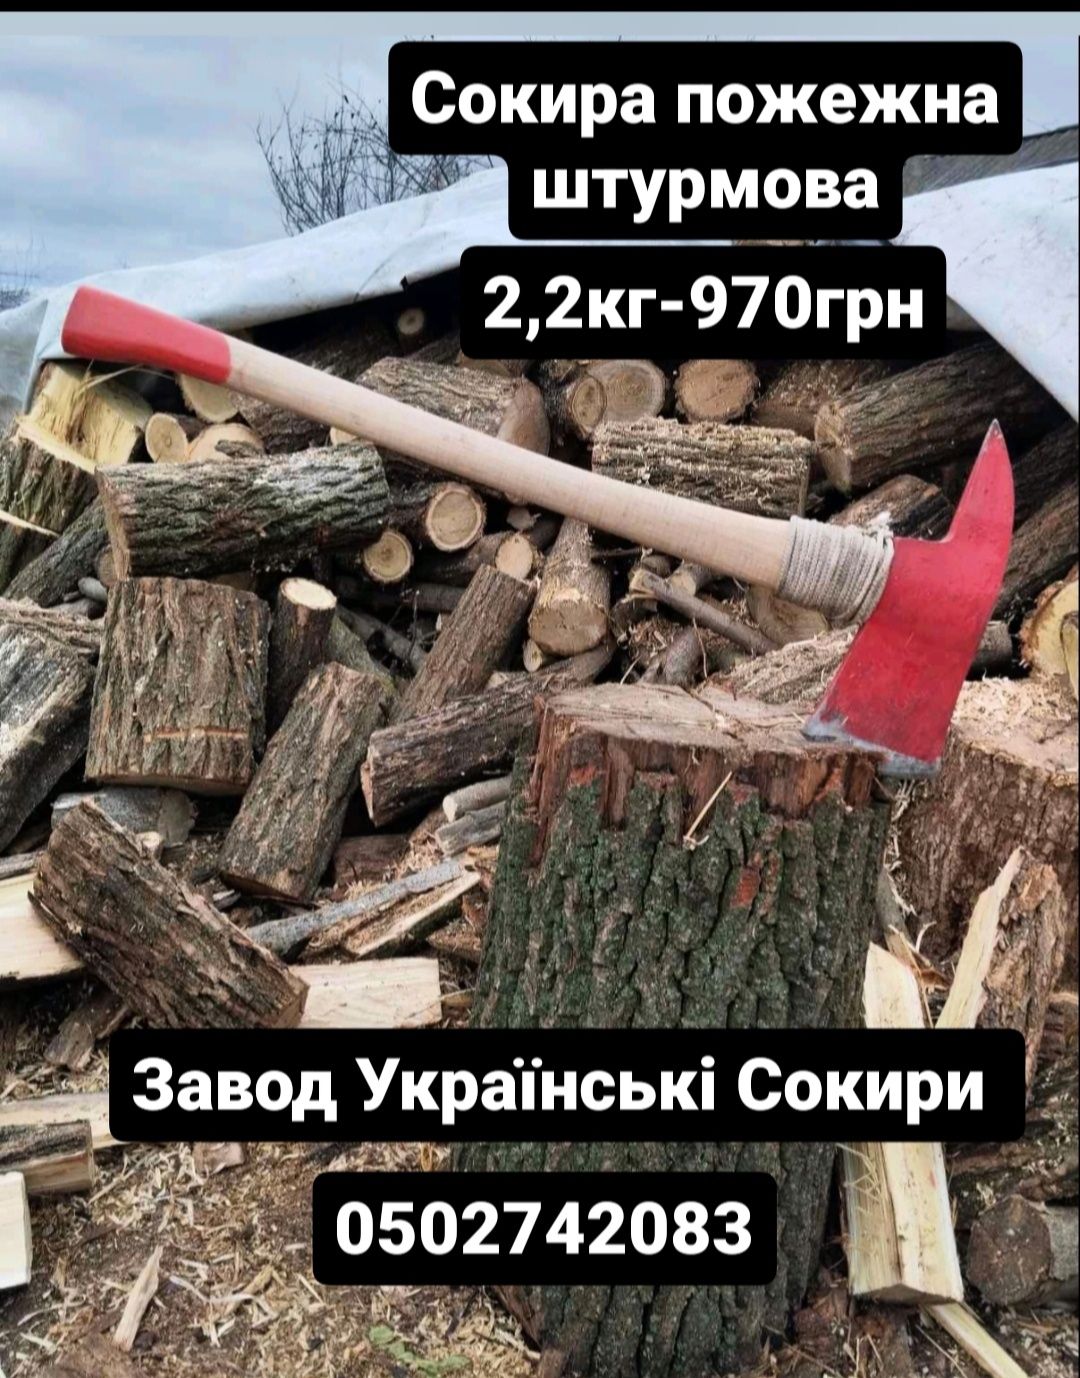 Сокира пожежна,топоры пожарные завод Українські Сокири